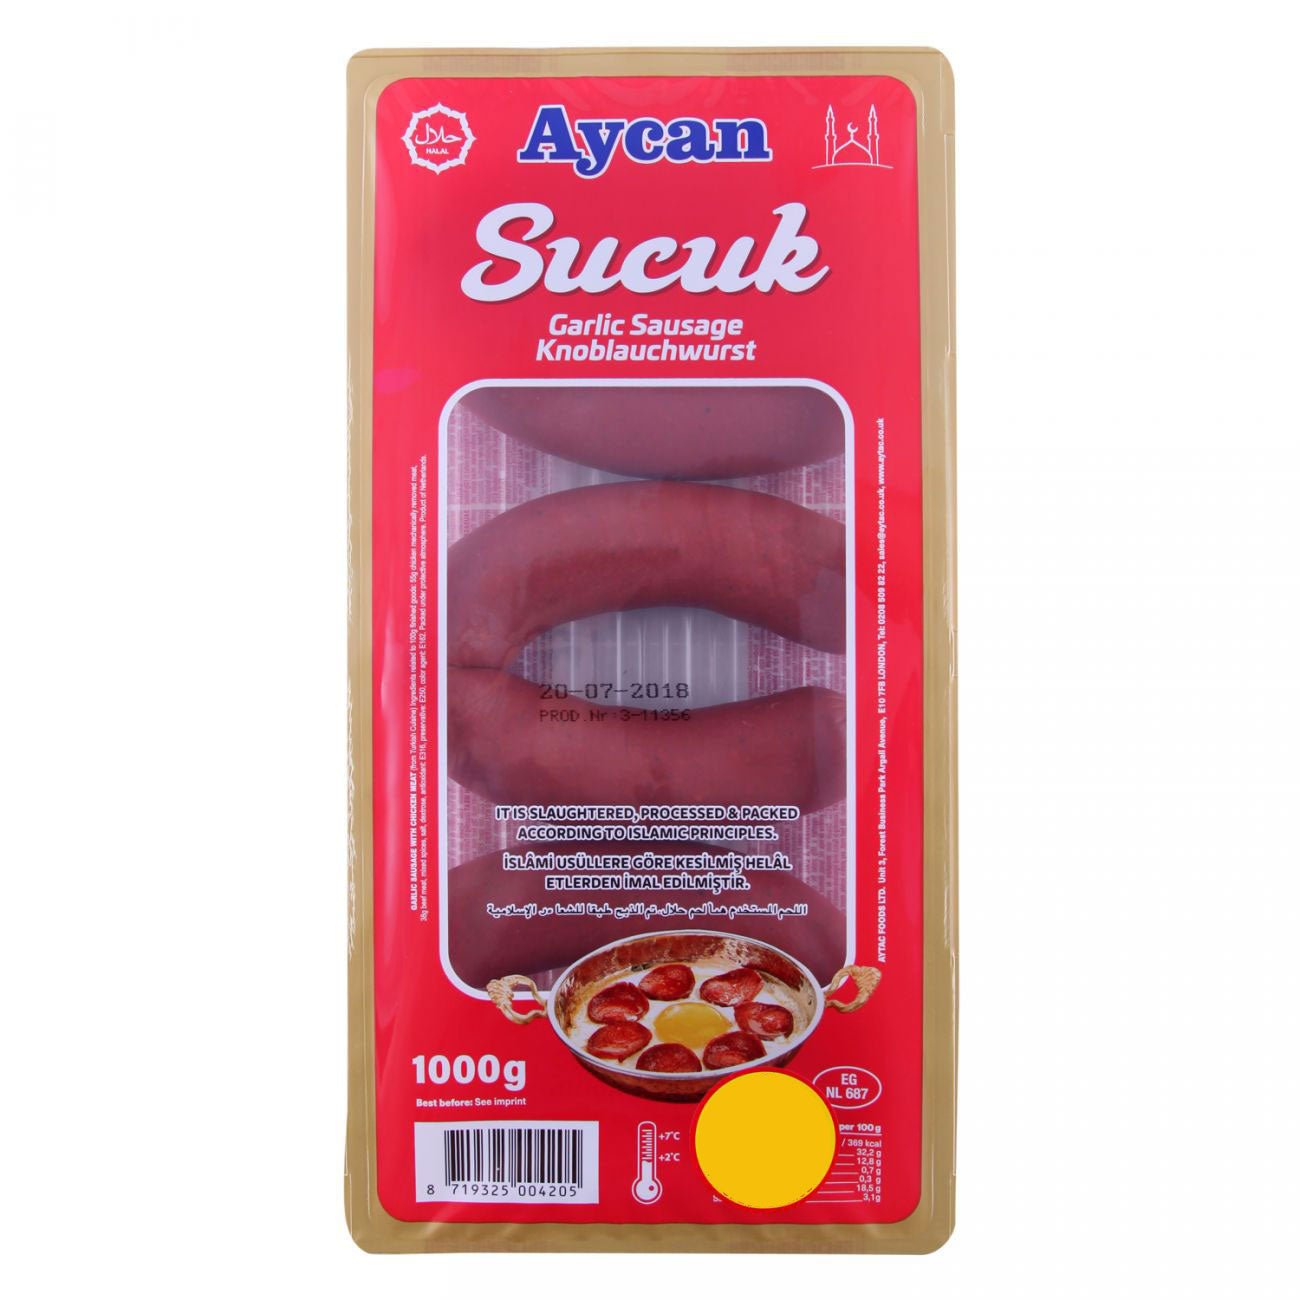 Aycan Kangal Sucuk (1KG) - Aytac Foods